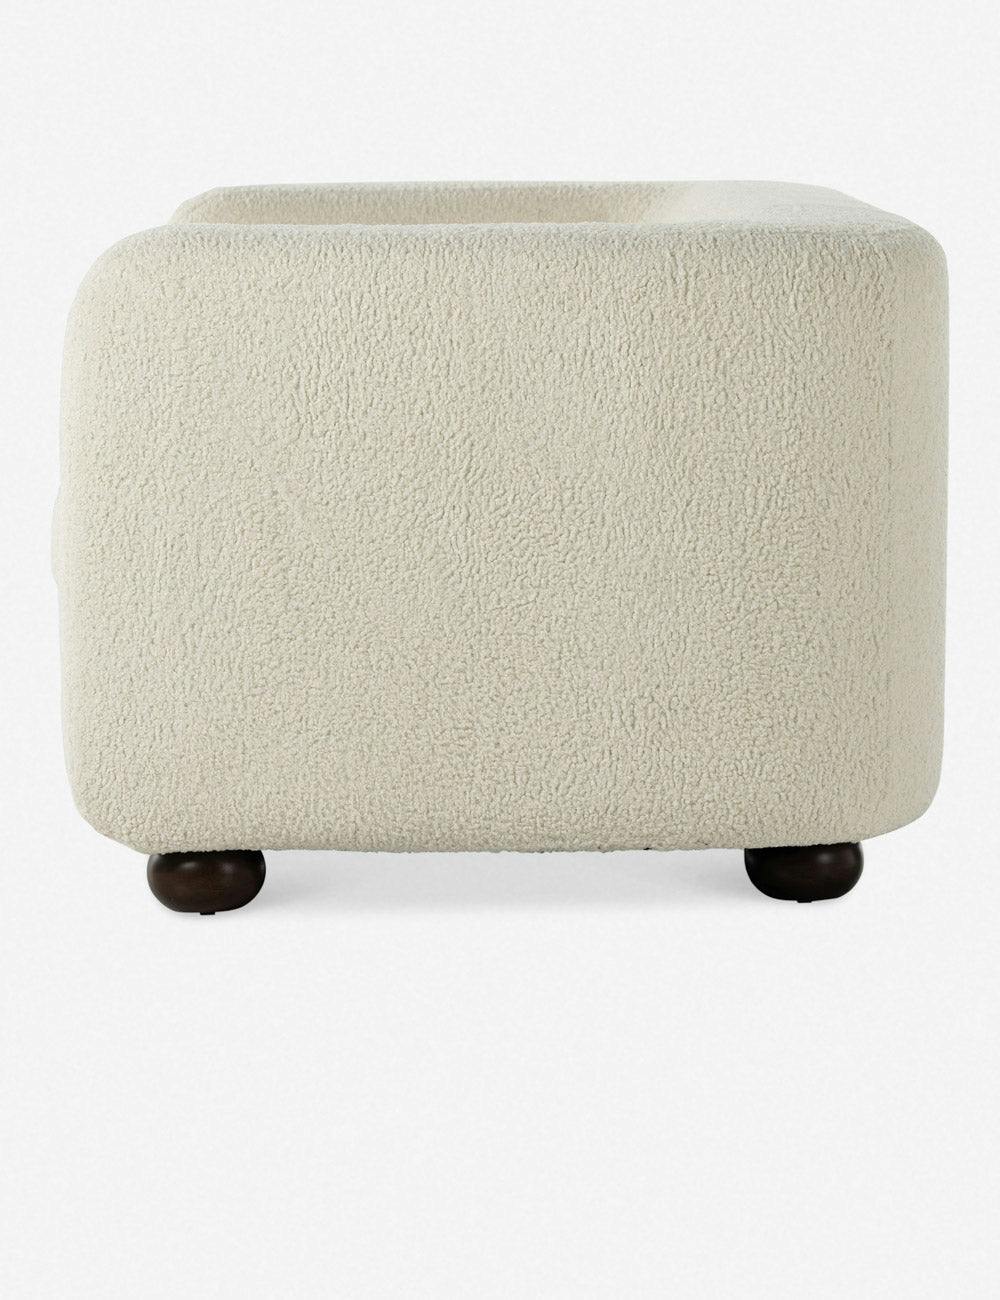 Curved Sheepskin Natural 84" White Contemporary Sofa